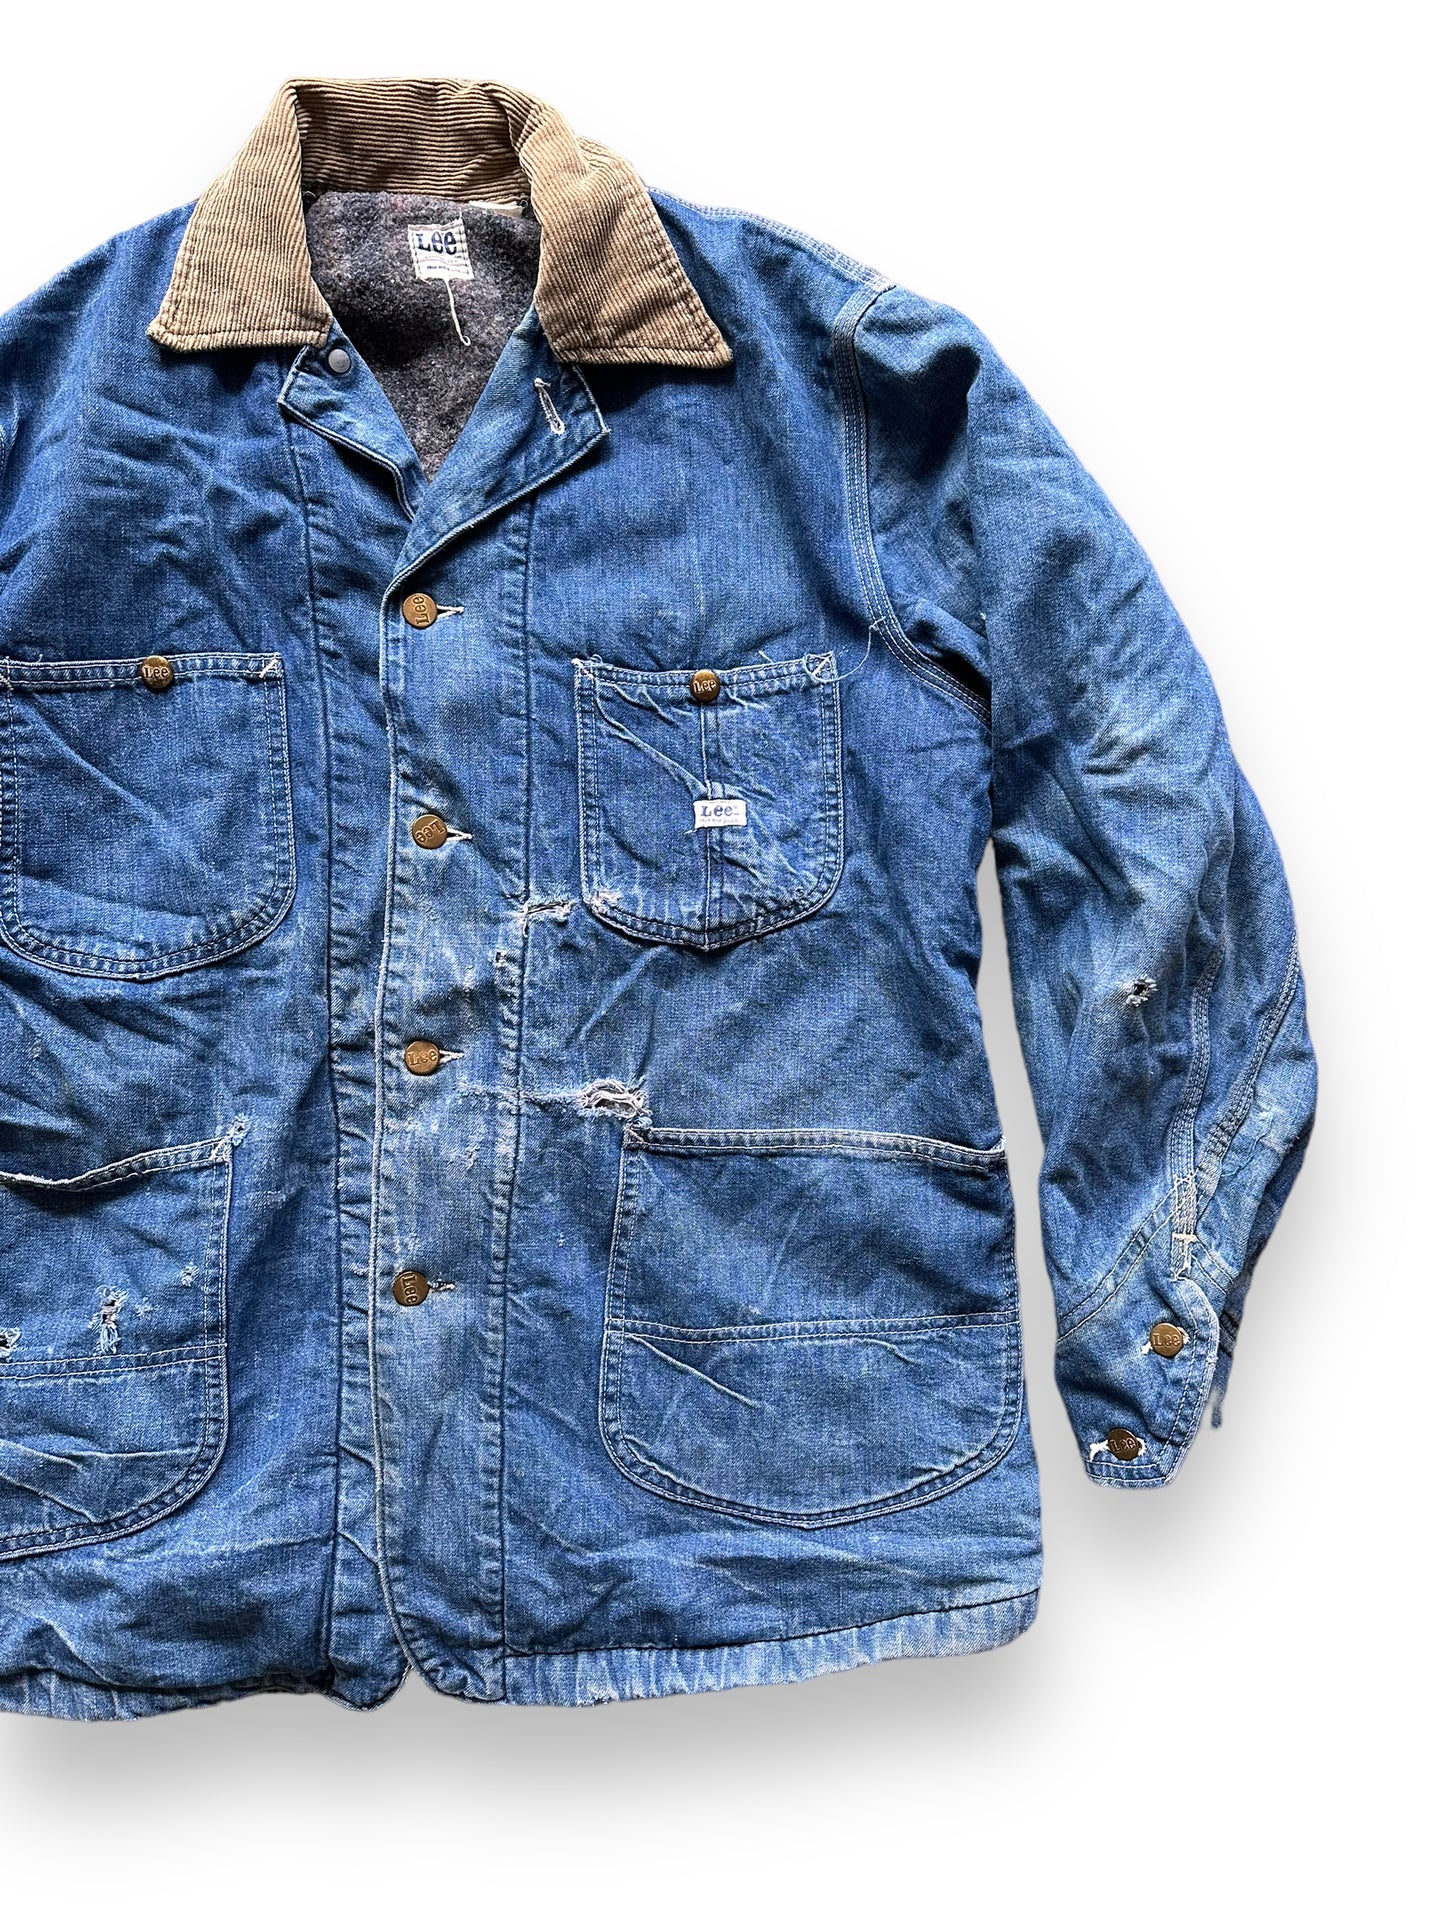 Front Left View of Vintage Blanket Lined Lee Denim Chore Jacket SZ XL| Vintage Denim Workwear | Seattle Vintage Workwear